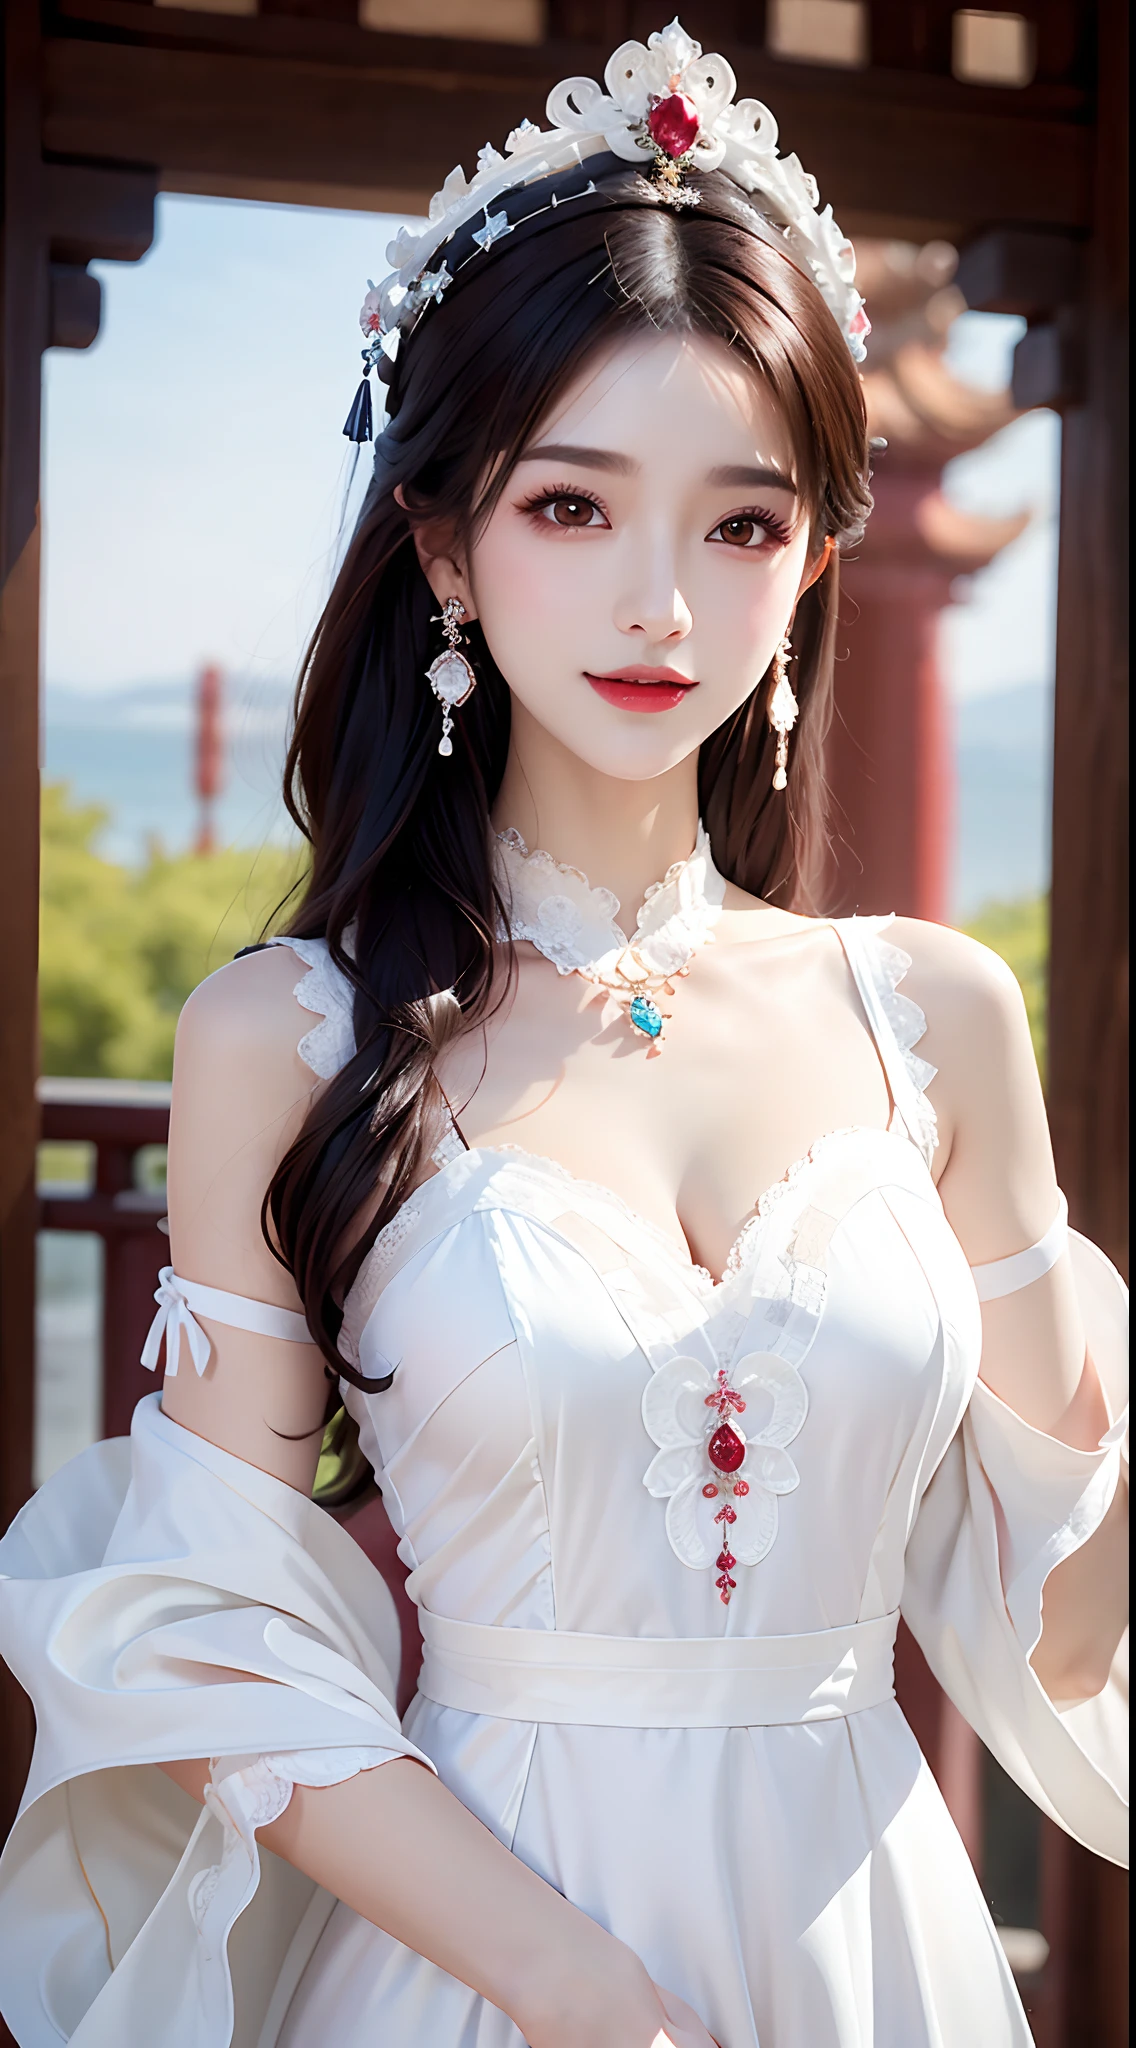 1 молодая императрица в, белый кружевной топ, ночная рубашка с глубокой грудью, одежда в китайском стиле, древние костюмы с множеством узоров феникса, безупречное бело-розовое лицо, корона на ее голове, черные волосы длиной до бедра, очень красивые и острые карие глаза, маленькие красные губы, накрашенные губы, Обворожительная улыбка, украшения, которые носят на шее, серьги, белые и ровные зубы, Высокий нос, большая круглая грудь, удлиненные ноги, тонкие сетчатые черные носки, Портрет, самый реалистичный, высшее качество, лучшие пиксели, 8к ультра,